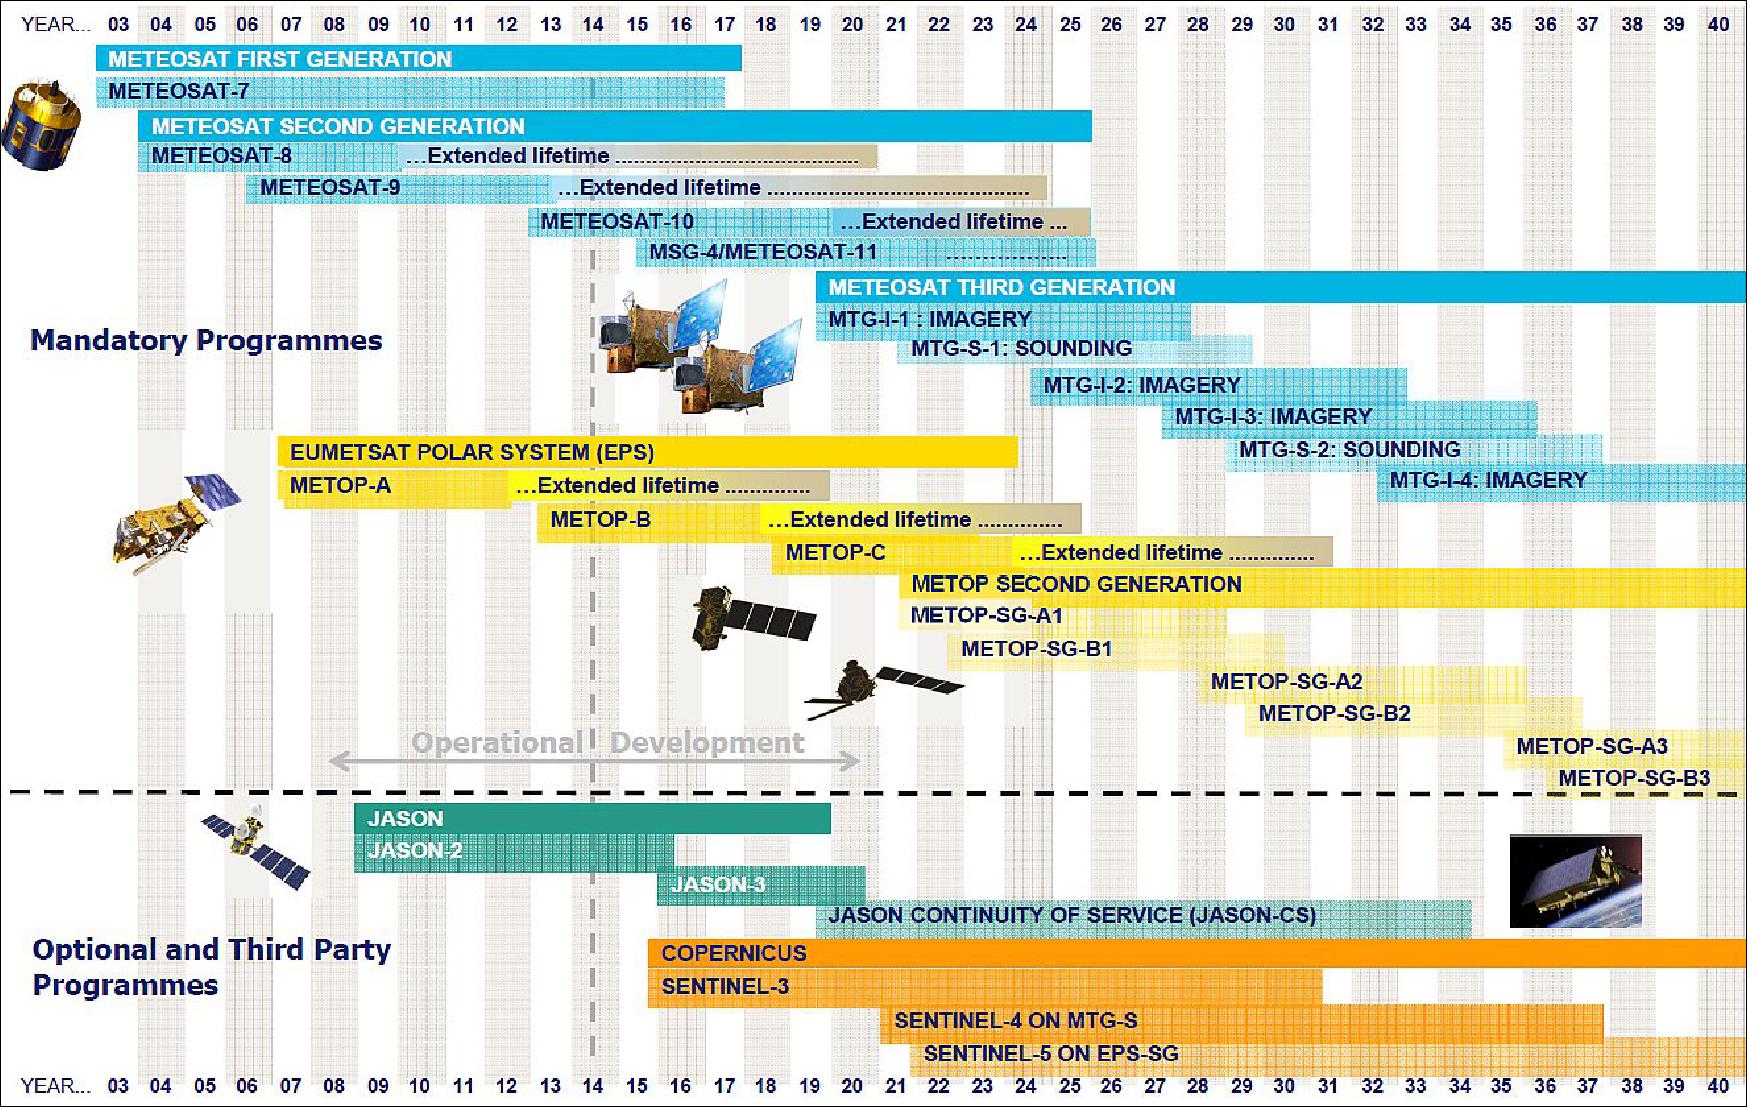 Figure 15: Overview of EUMETSAT programs (image credit: EUMETSAT) 26)